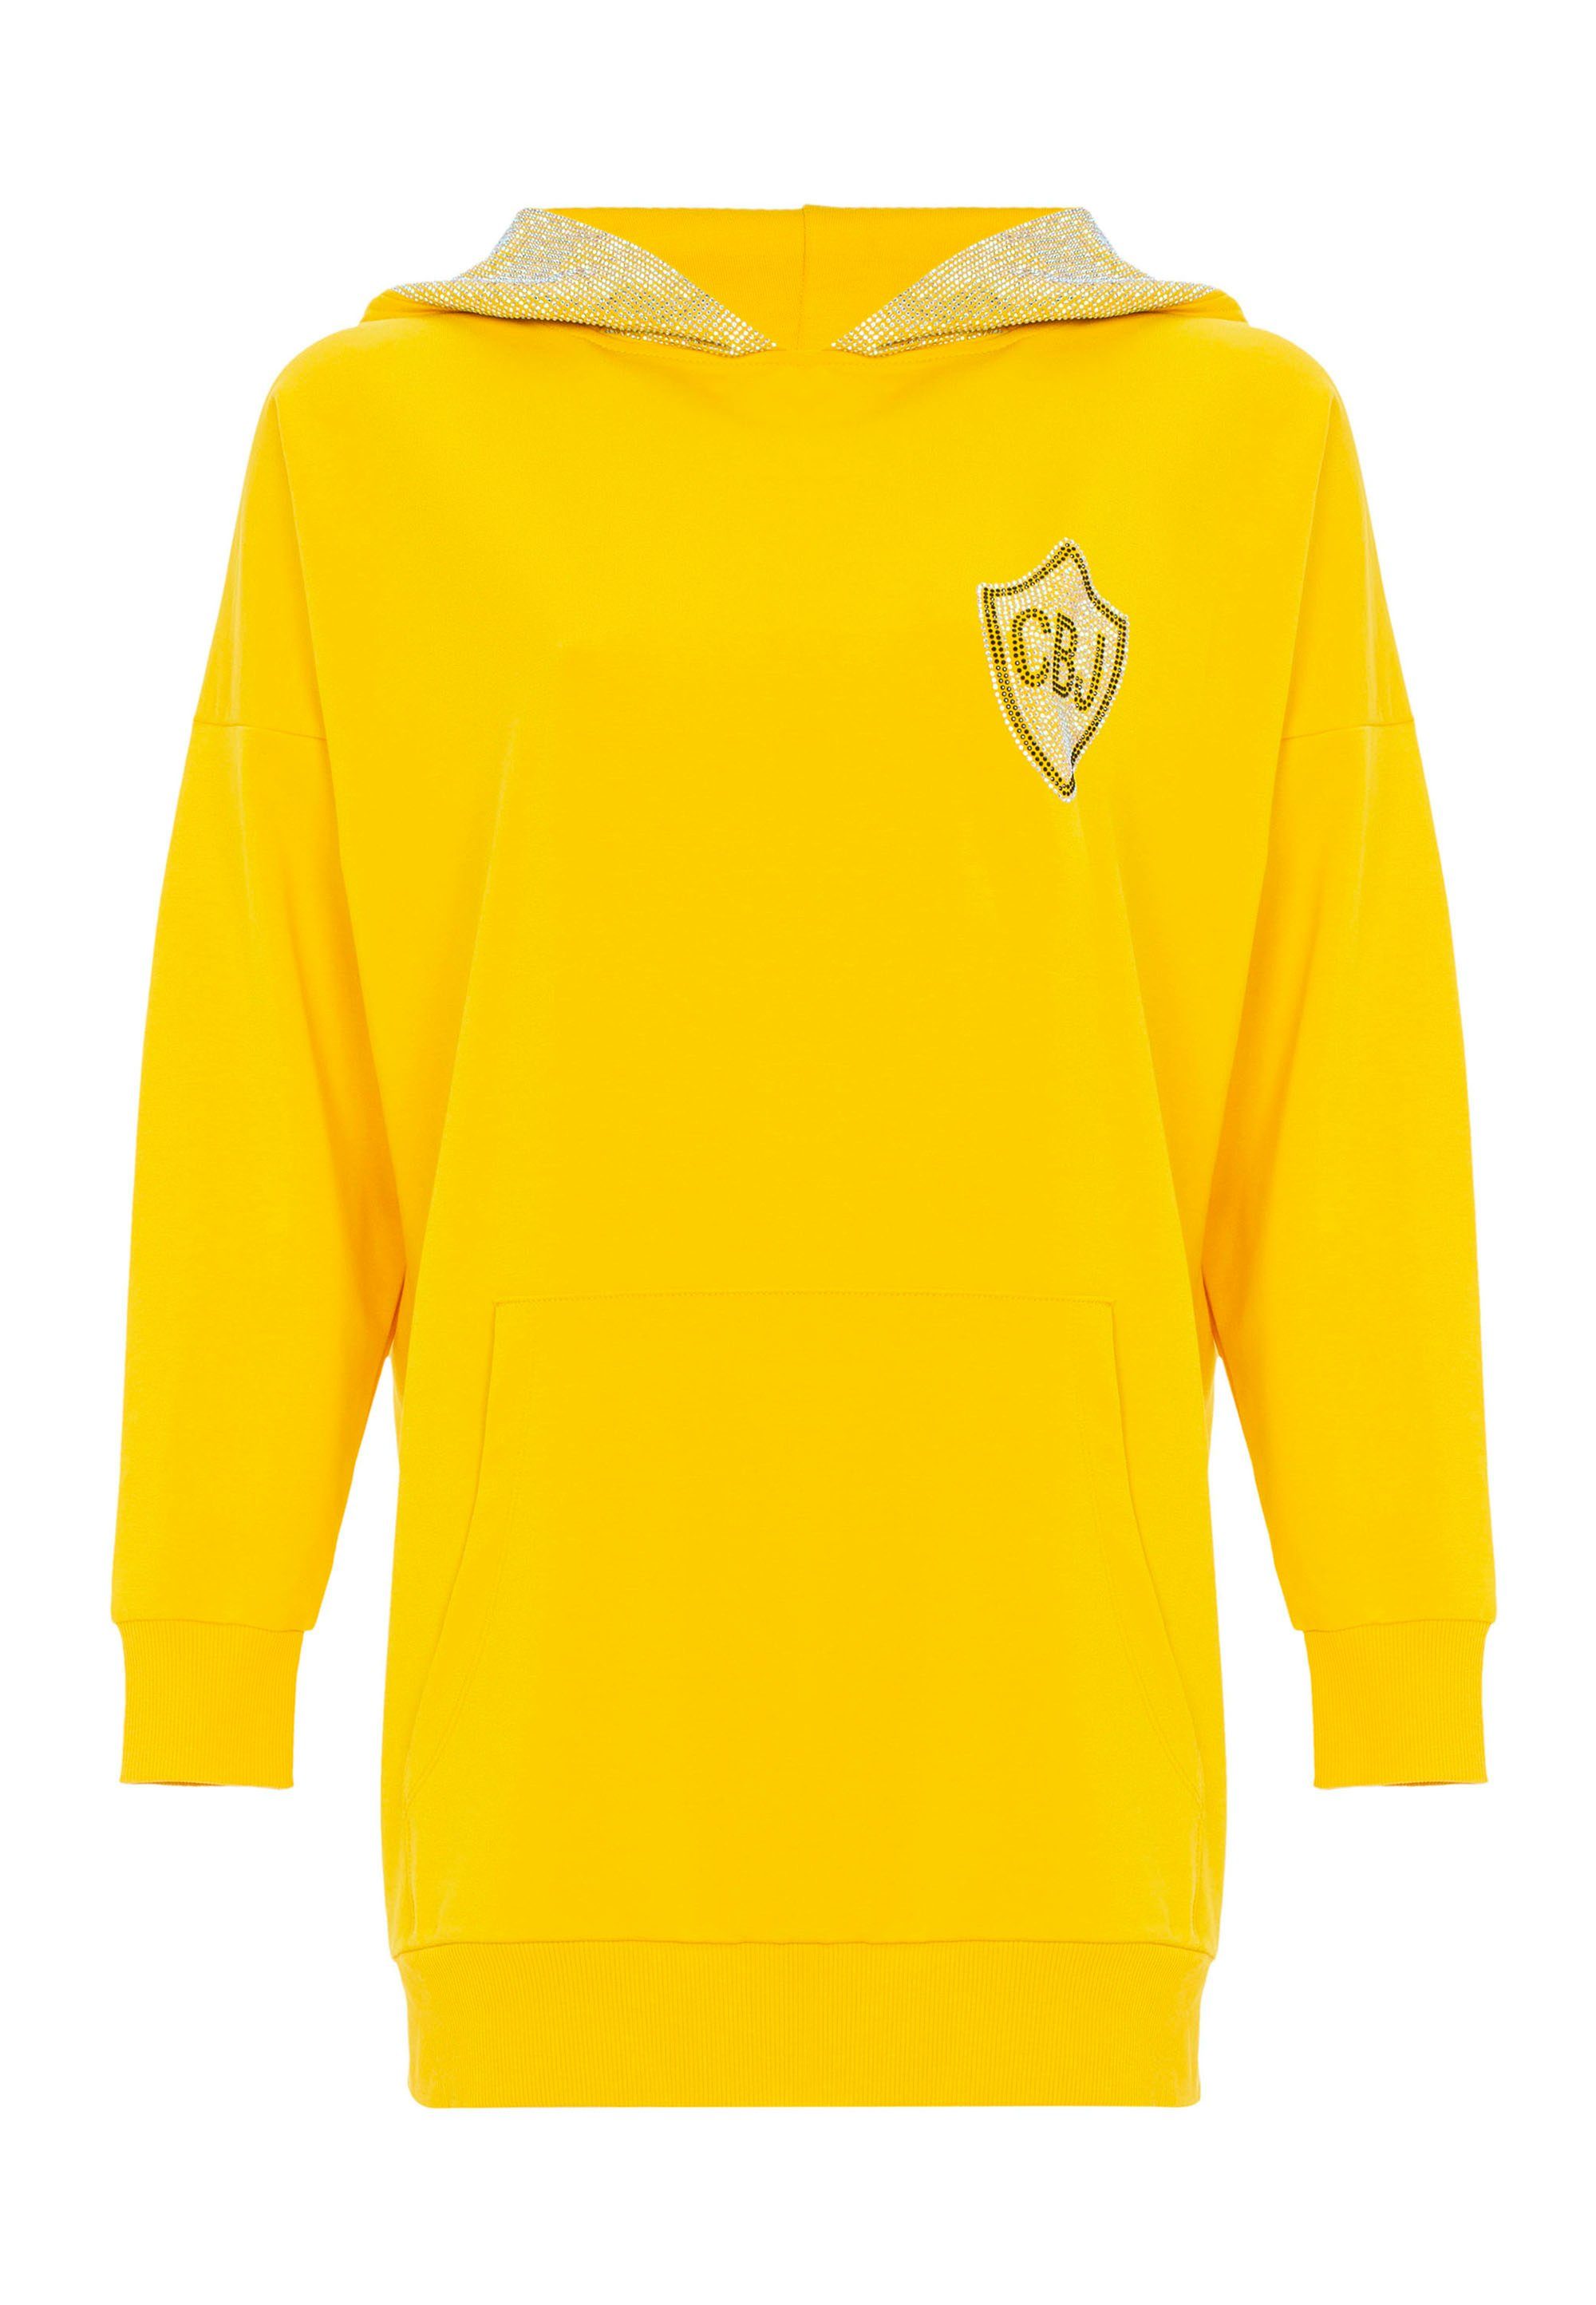 Cipo & Baxx Jerseykleid aufwendigem gelb Strass-Design mit